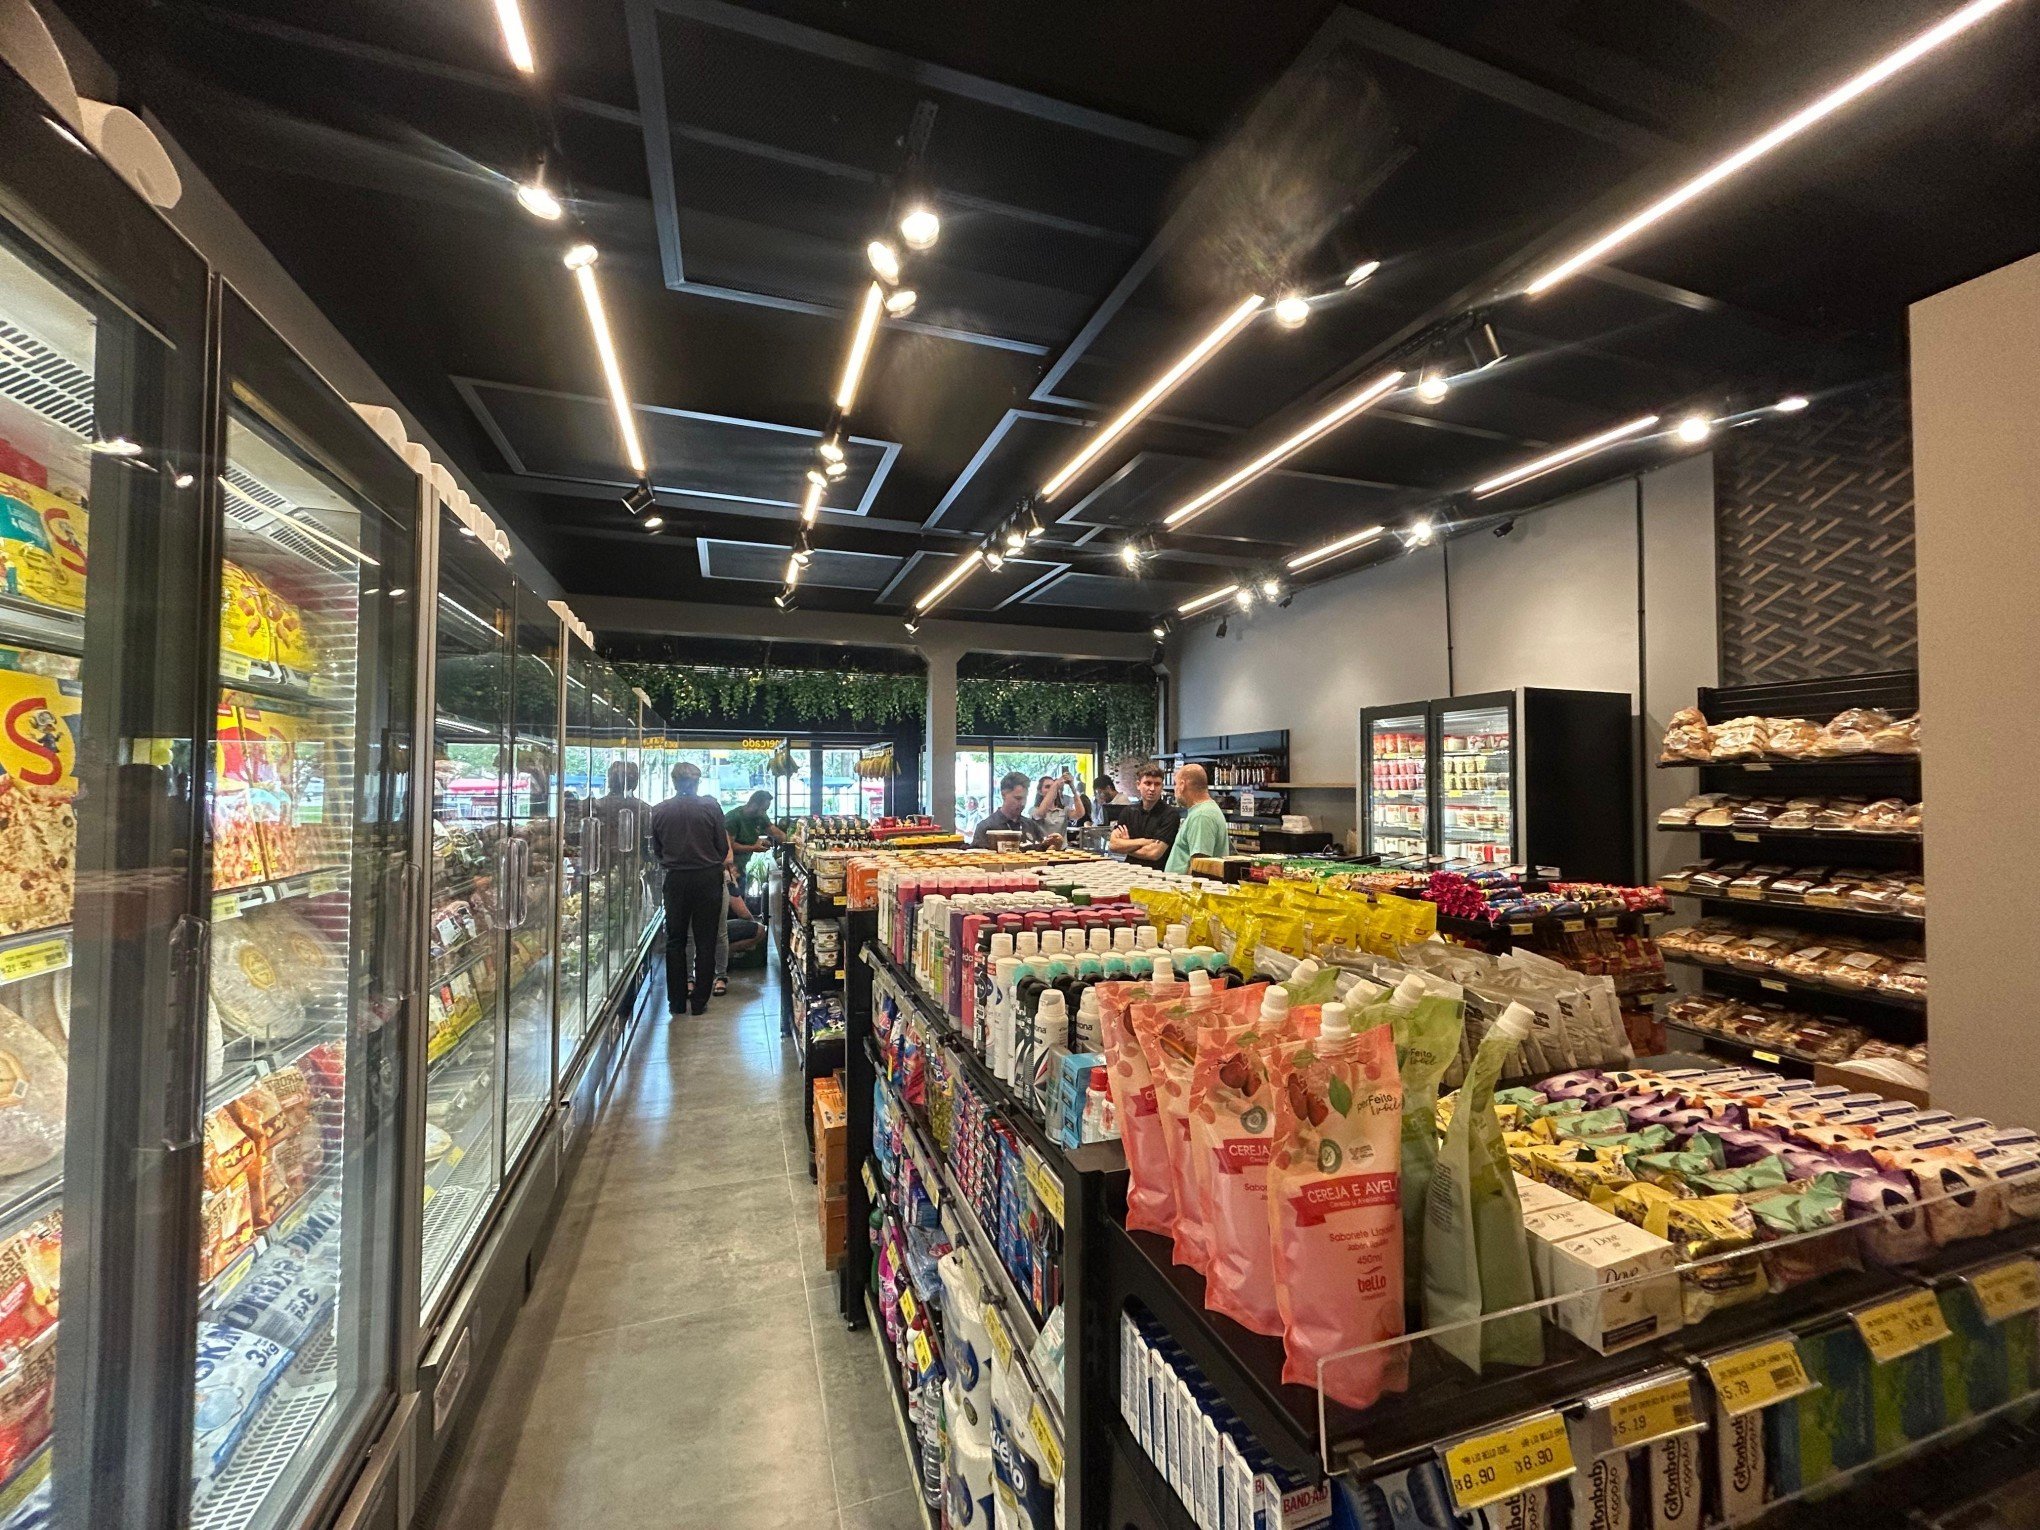 Cooperativa adquire supermercados da região e faz planos para novas aquisições; diretor avalia desempenho